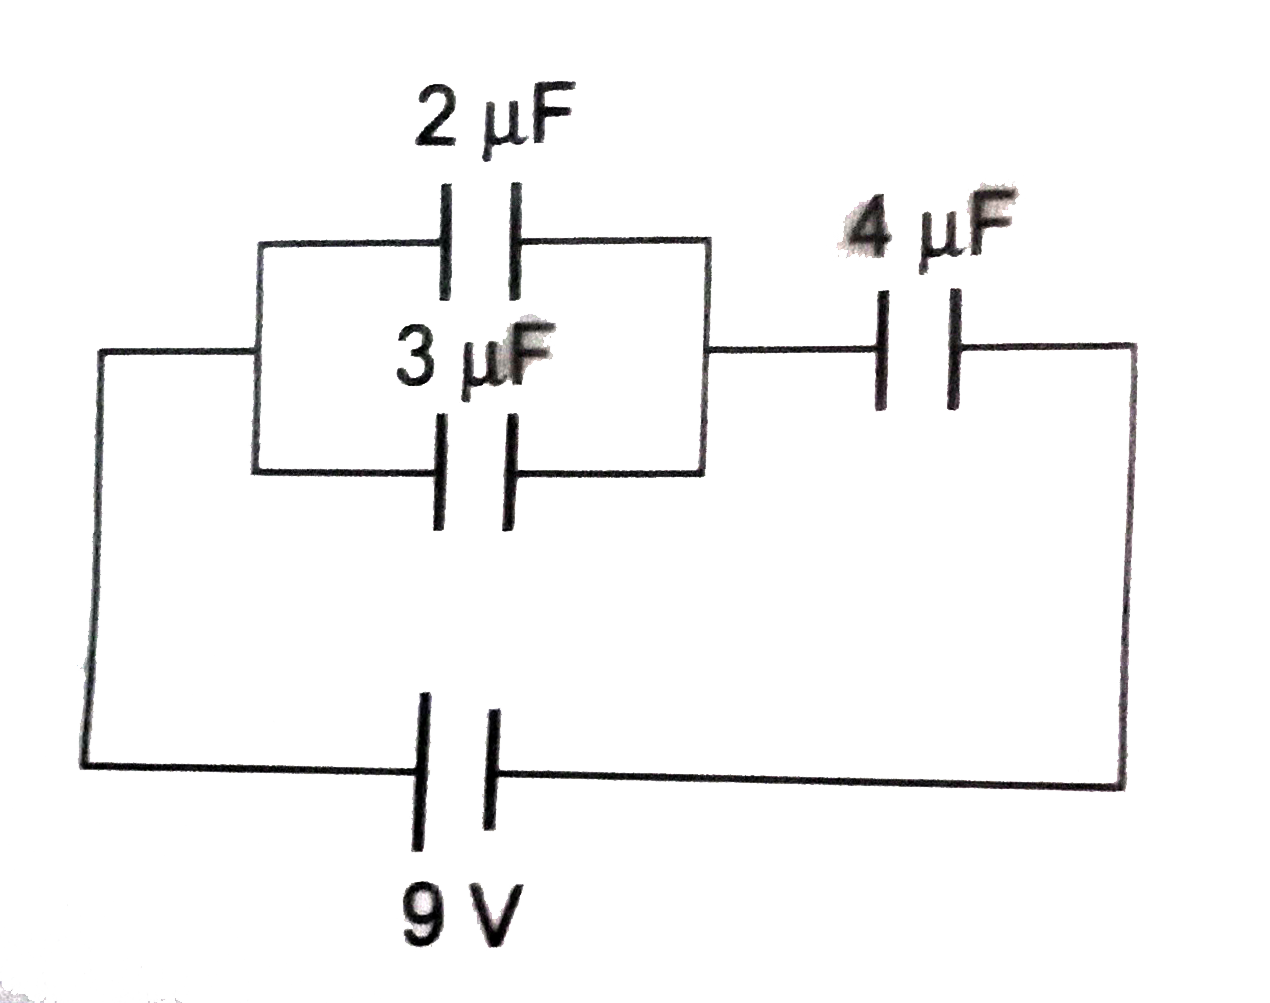 चित्र में 2 muF और 3 muF धारिता वाले दो संधारित्र समान्तरक्रम में जुड़े हुए दिखाए गए हैं। इस संयोजन को 4 mu F धारिता वाले संधारित्र के साथ श्रेणीक्रम में 9V की बैटरी के ध्रुवों के बीच जोड़ दिया जाता है। बैटरी से लिए गए आवेश की गणना करे।